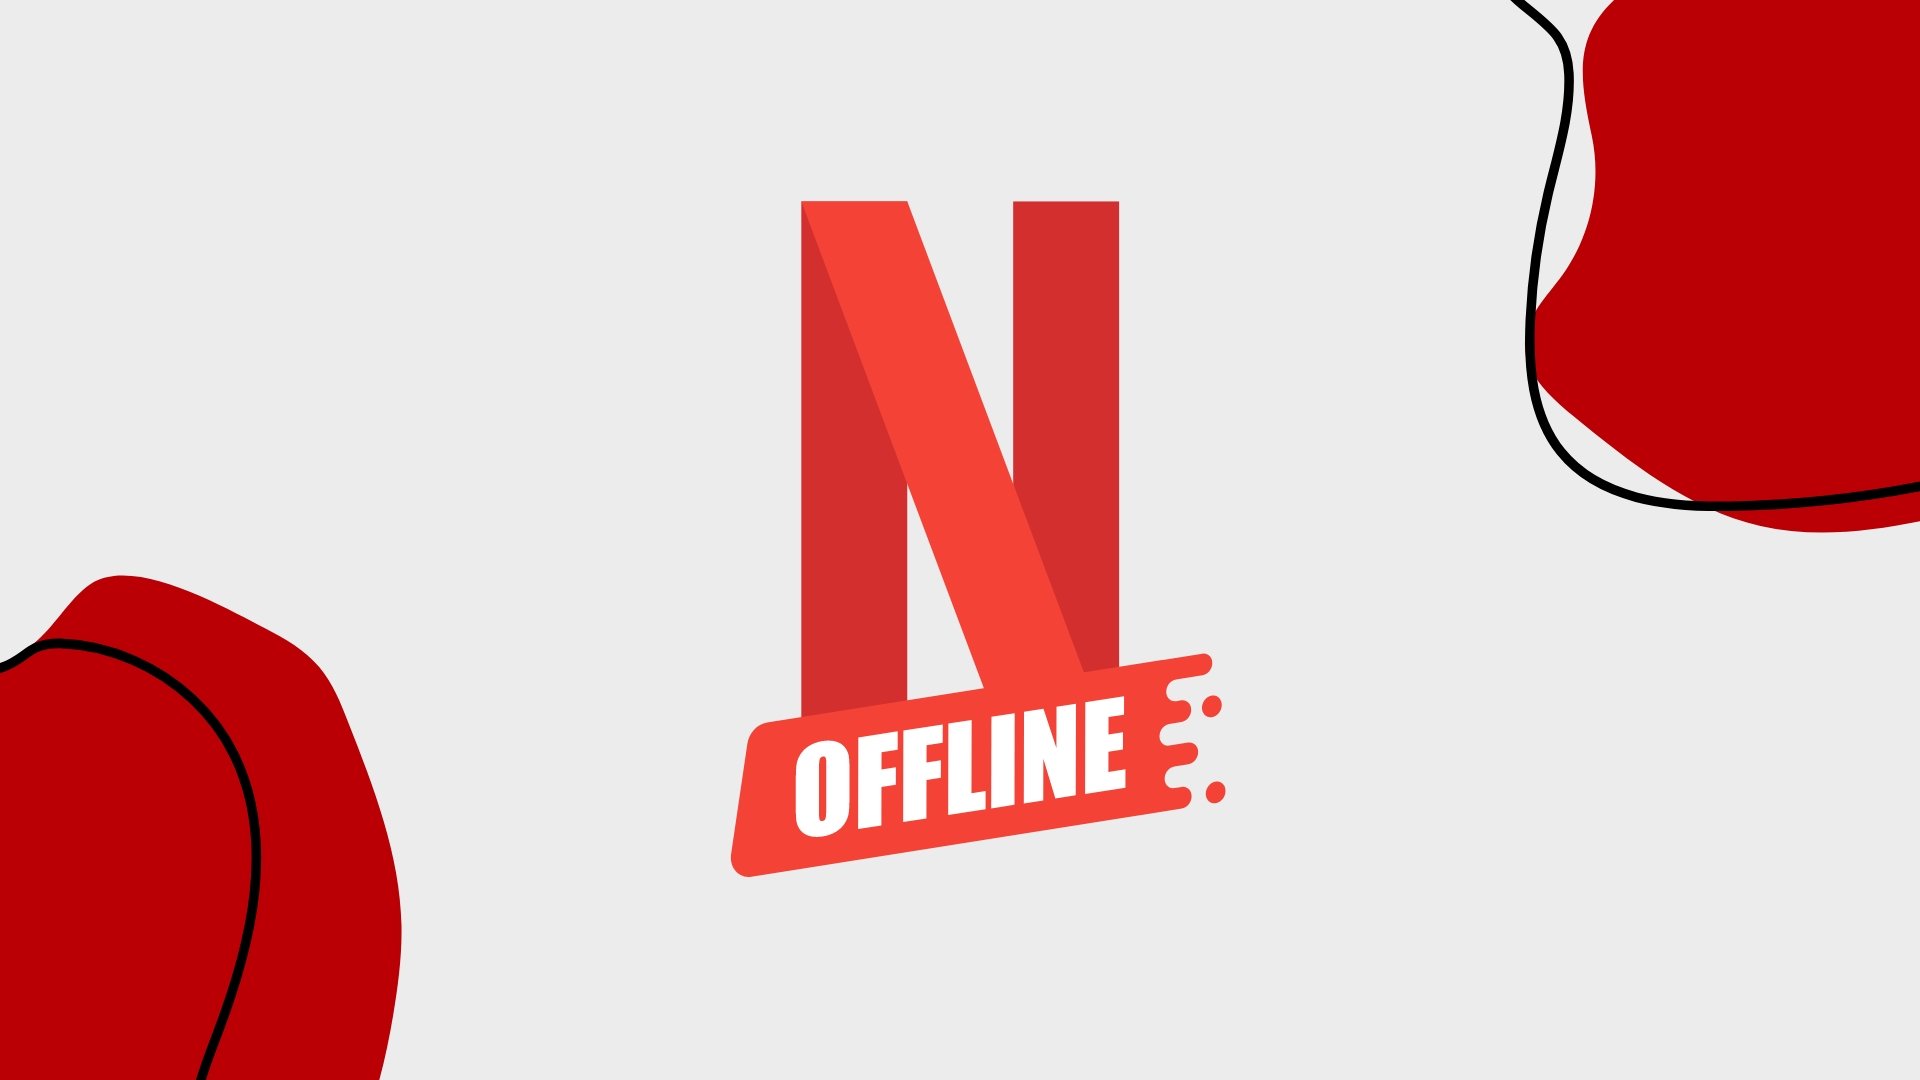 logo do netflix com imagem de offline